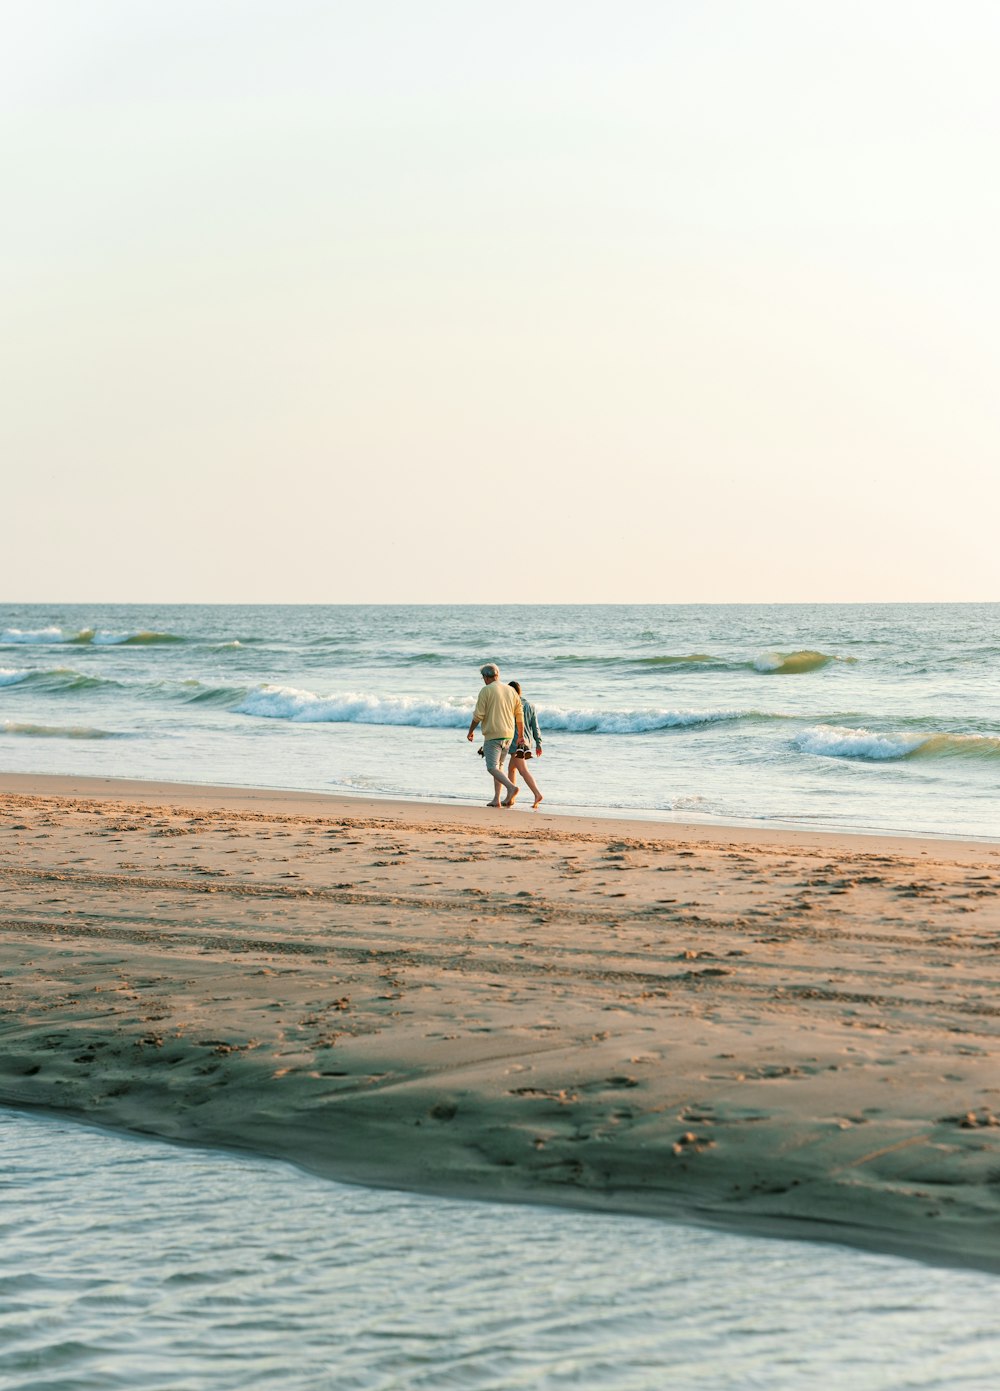 흰 셔츠와 검은 바지를 입은 남자가 낮 동안 해변을 걷고 있다